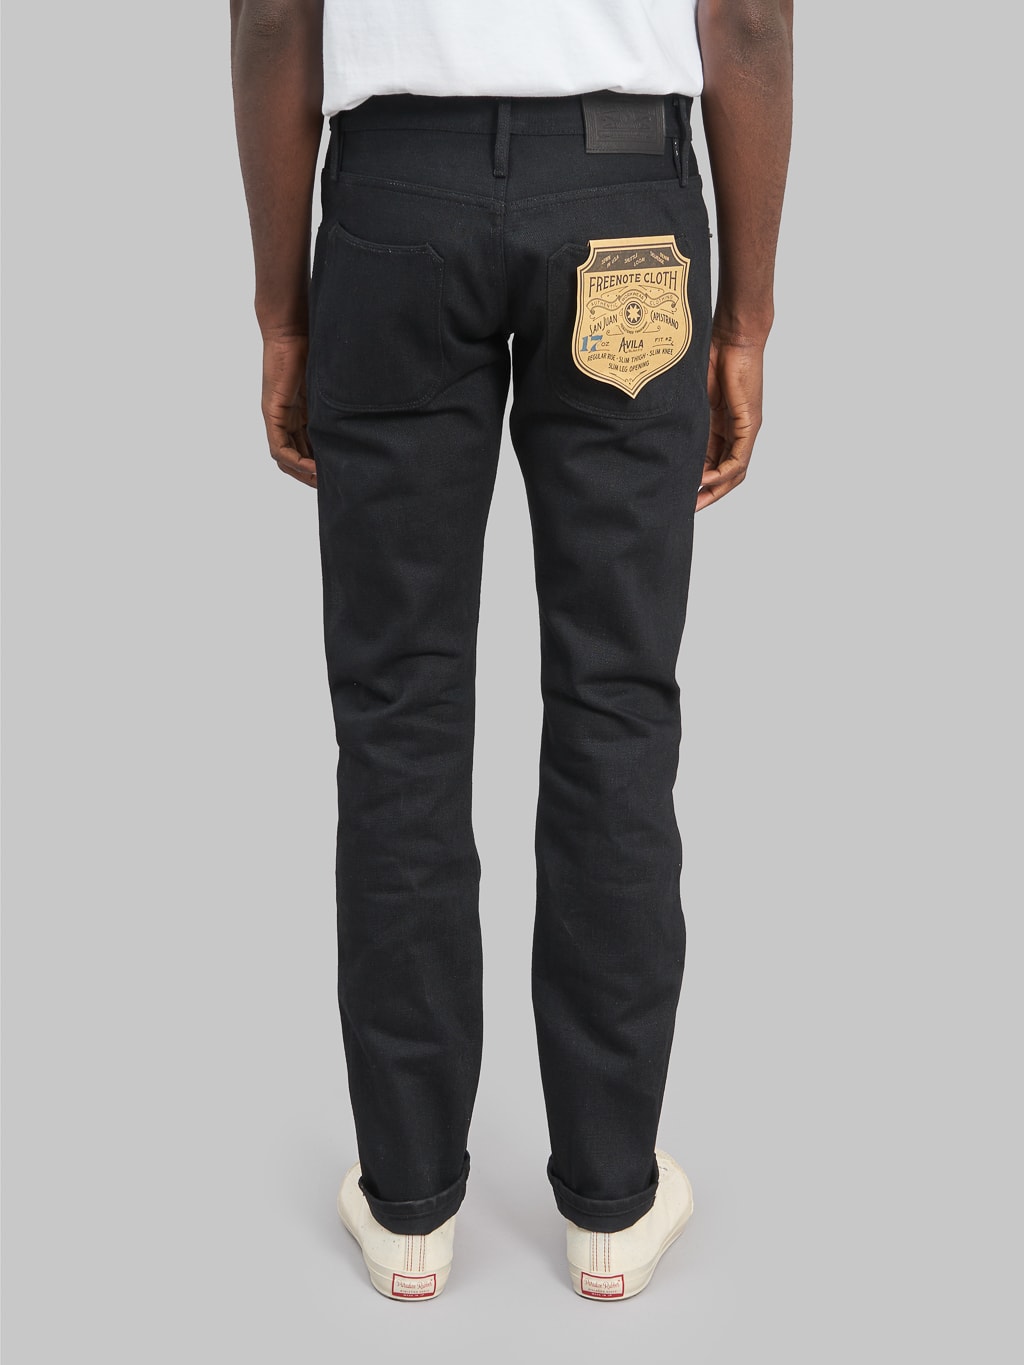 Freenote Cloth Avila 17oz Black Denim Slim Taper Jeans back